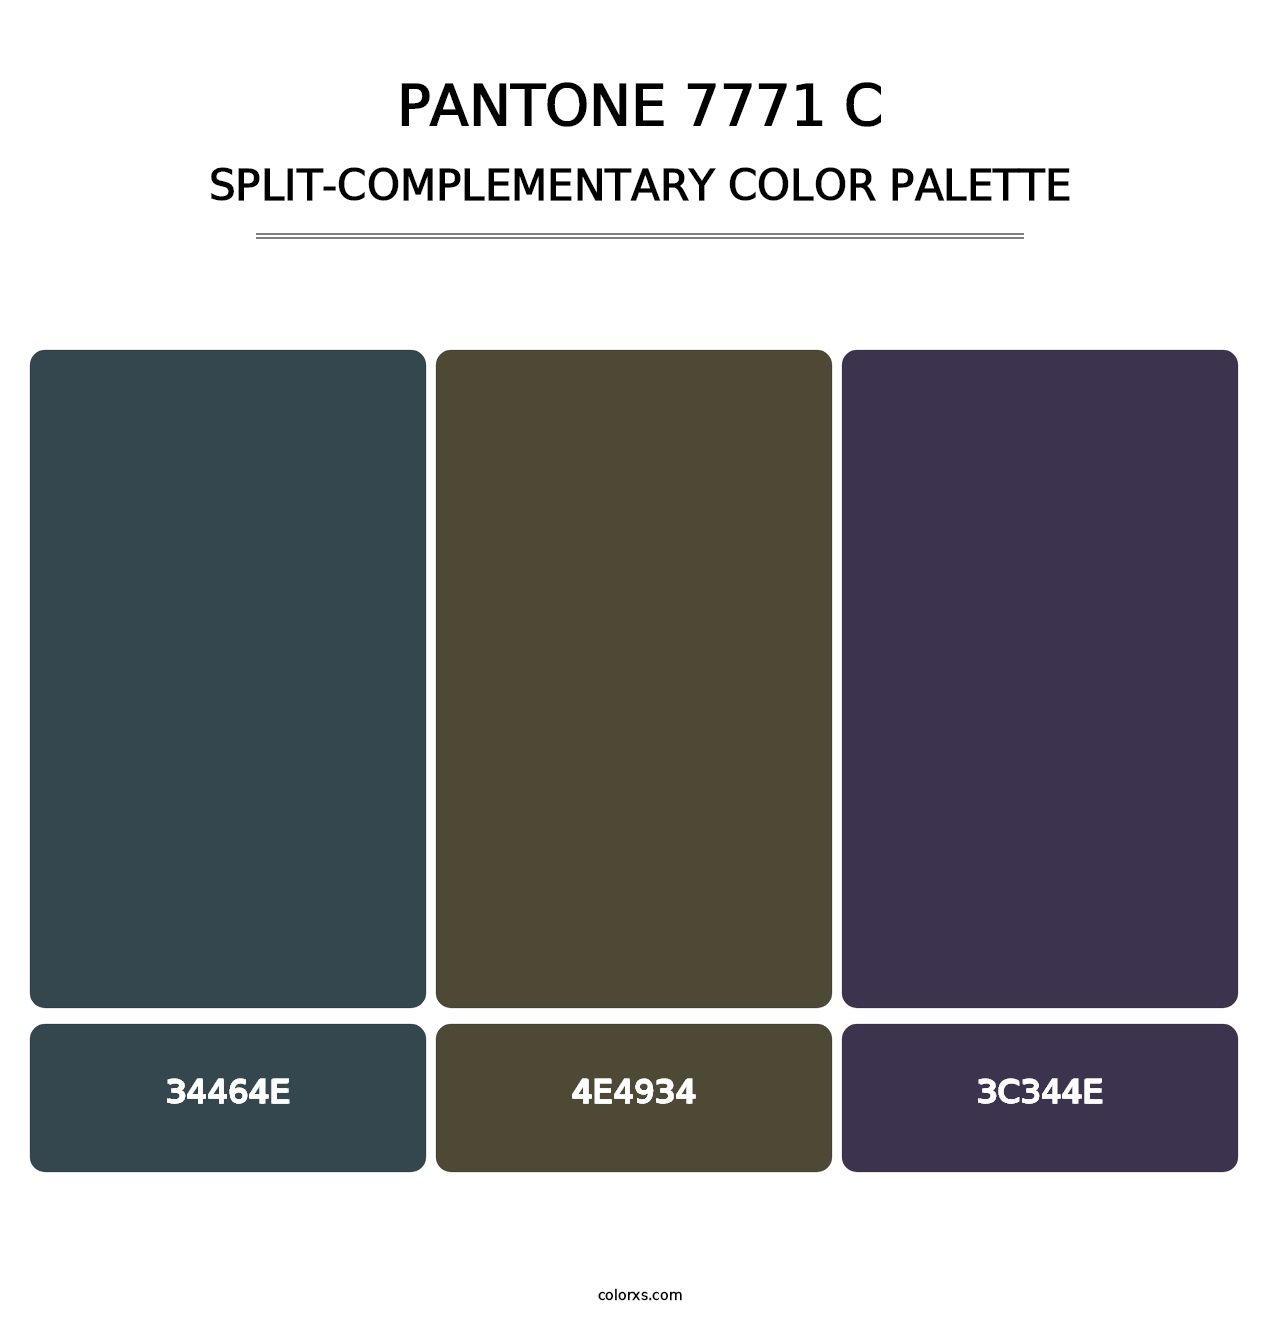 PANTONE 7771 C - Split-Complementary Color Palette